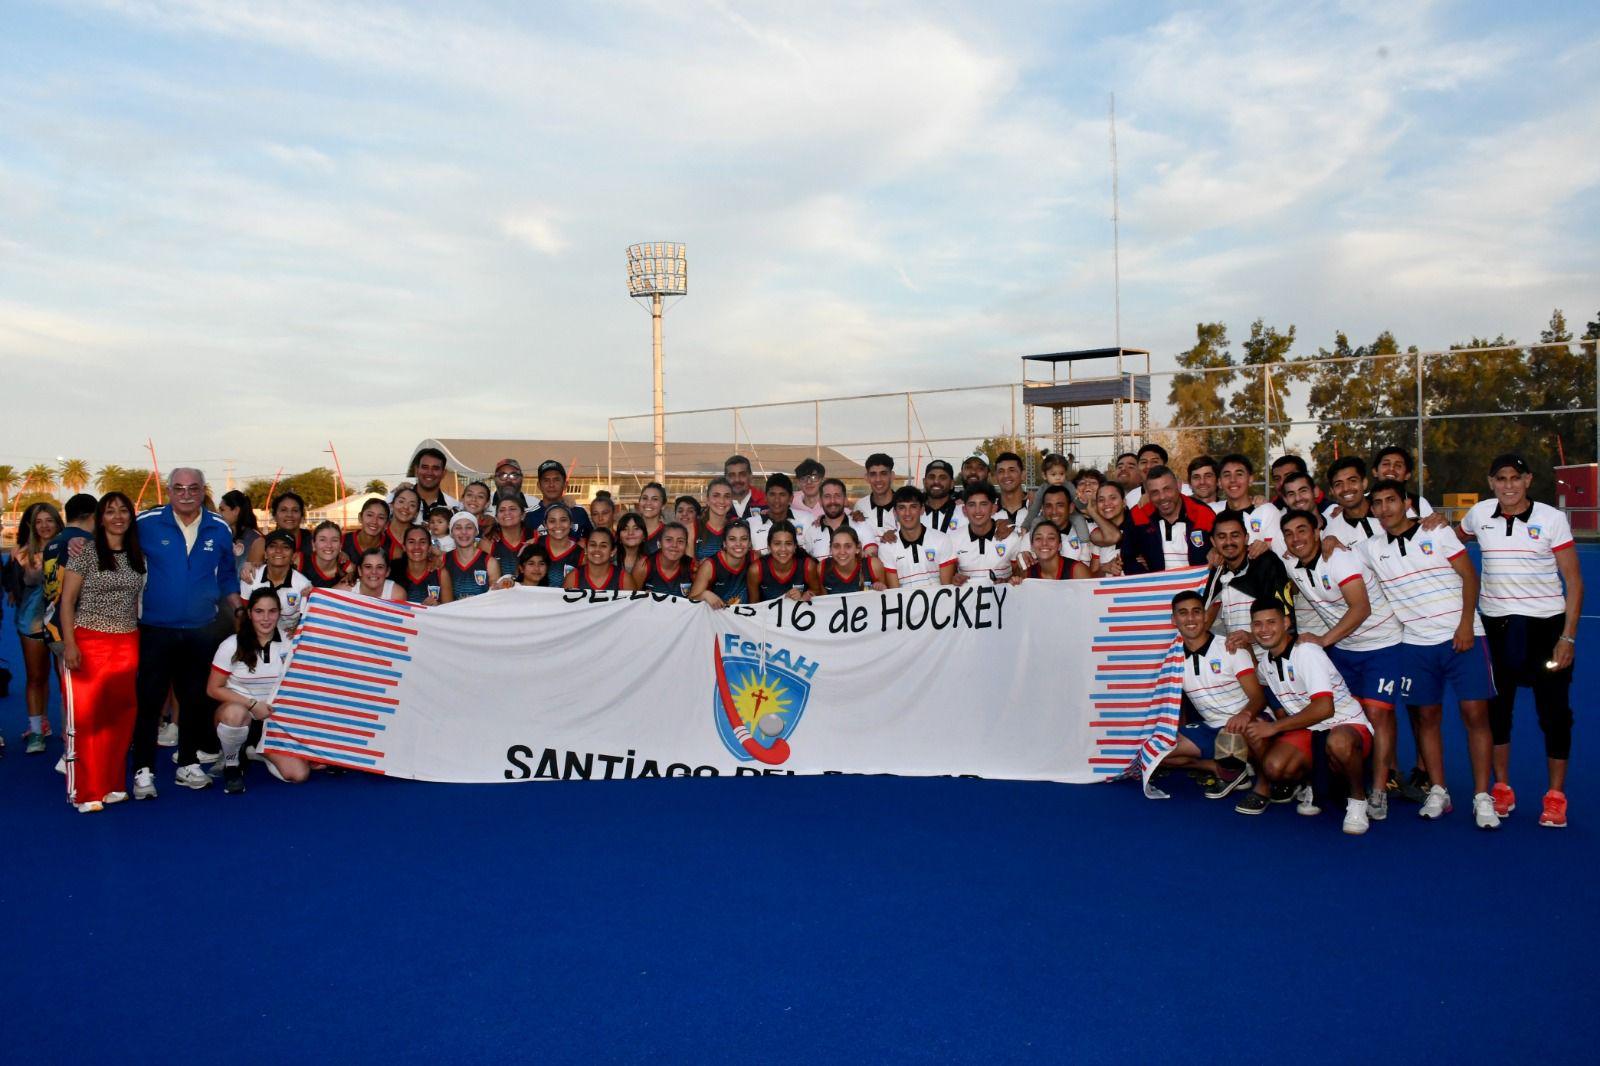 Los Seleccionados Santiaguentildeos de hockey lograron el ascenso a la Categoriacutea A